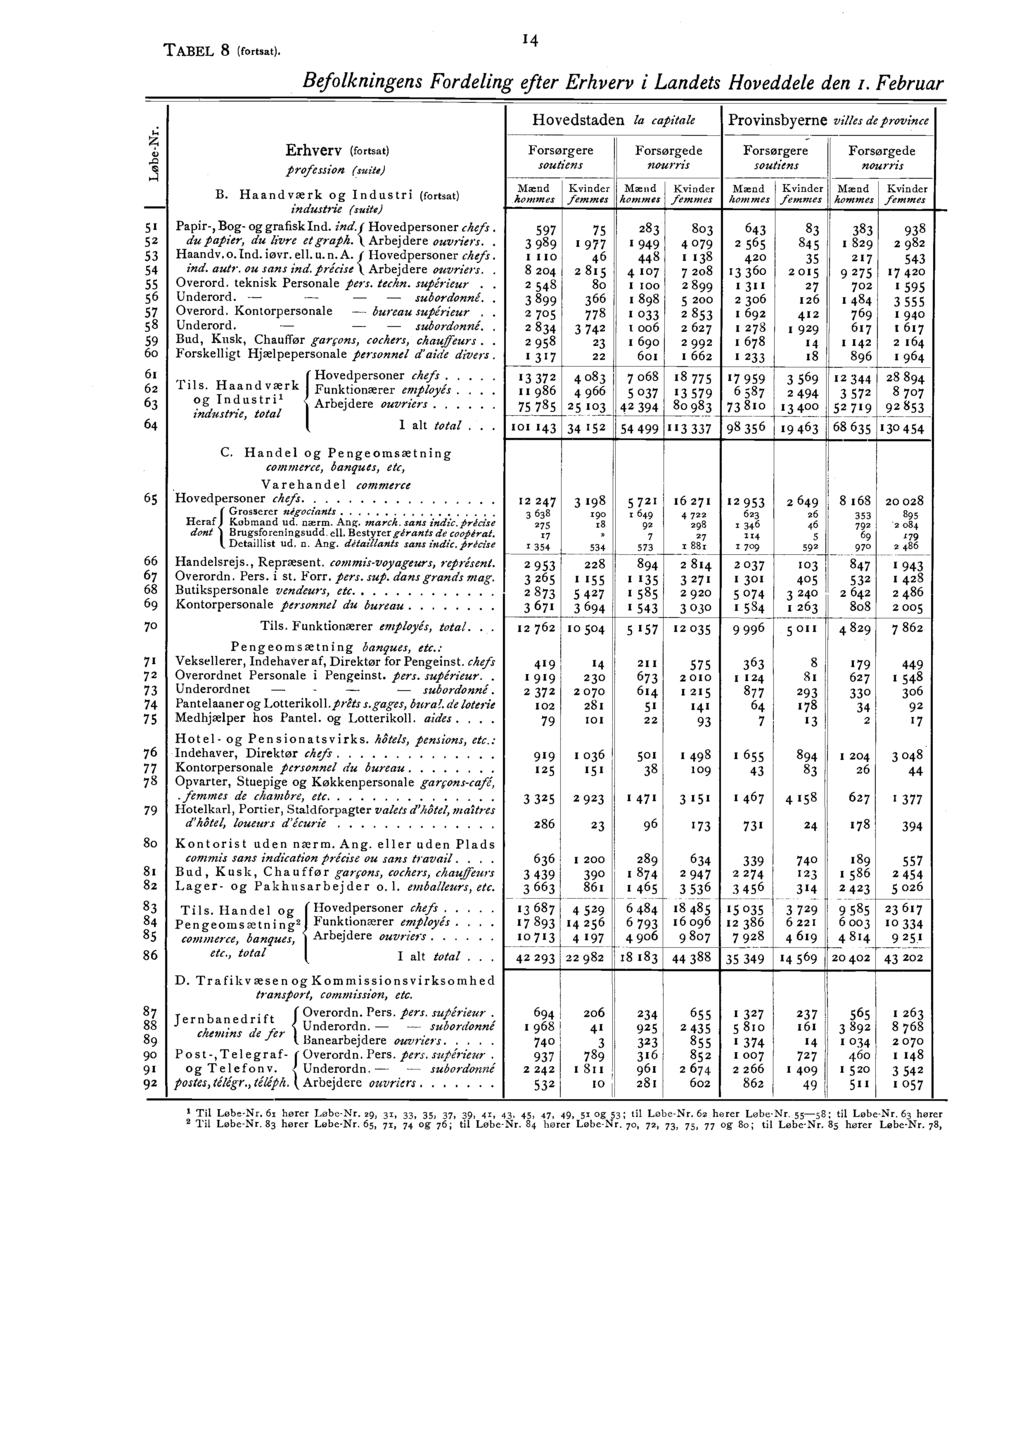 STATISTISK AARBOG. Statistisk Aarbog PDF Gratis download